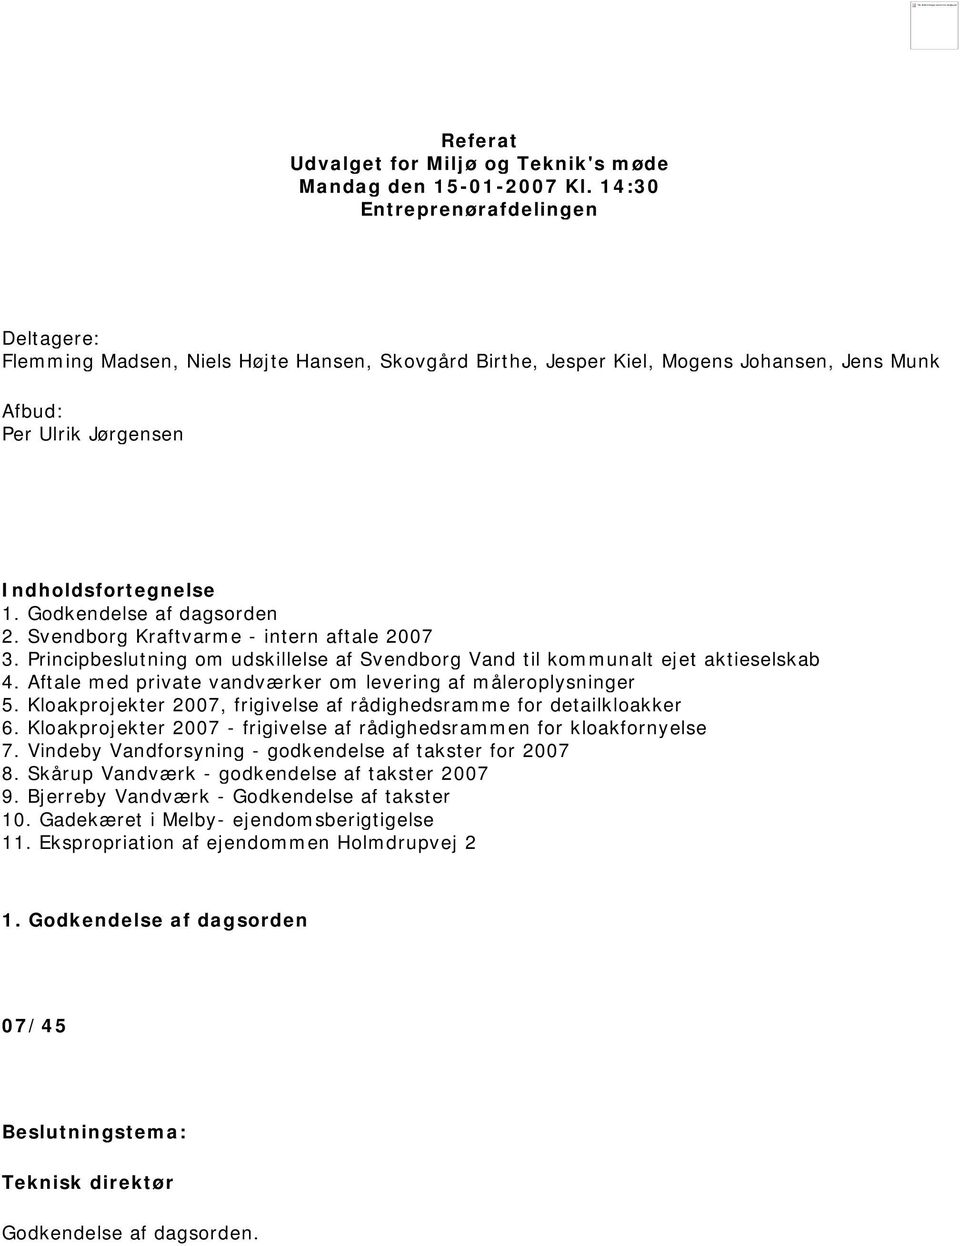 Godkendelse af dagsorden 2. Svendborg Kraftvarme - intern aftale 2007 3. Principbeslutning om udskillelse af Svendborg Vand til kommunalt ejet aktieselskab 4.